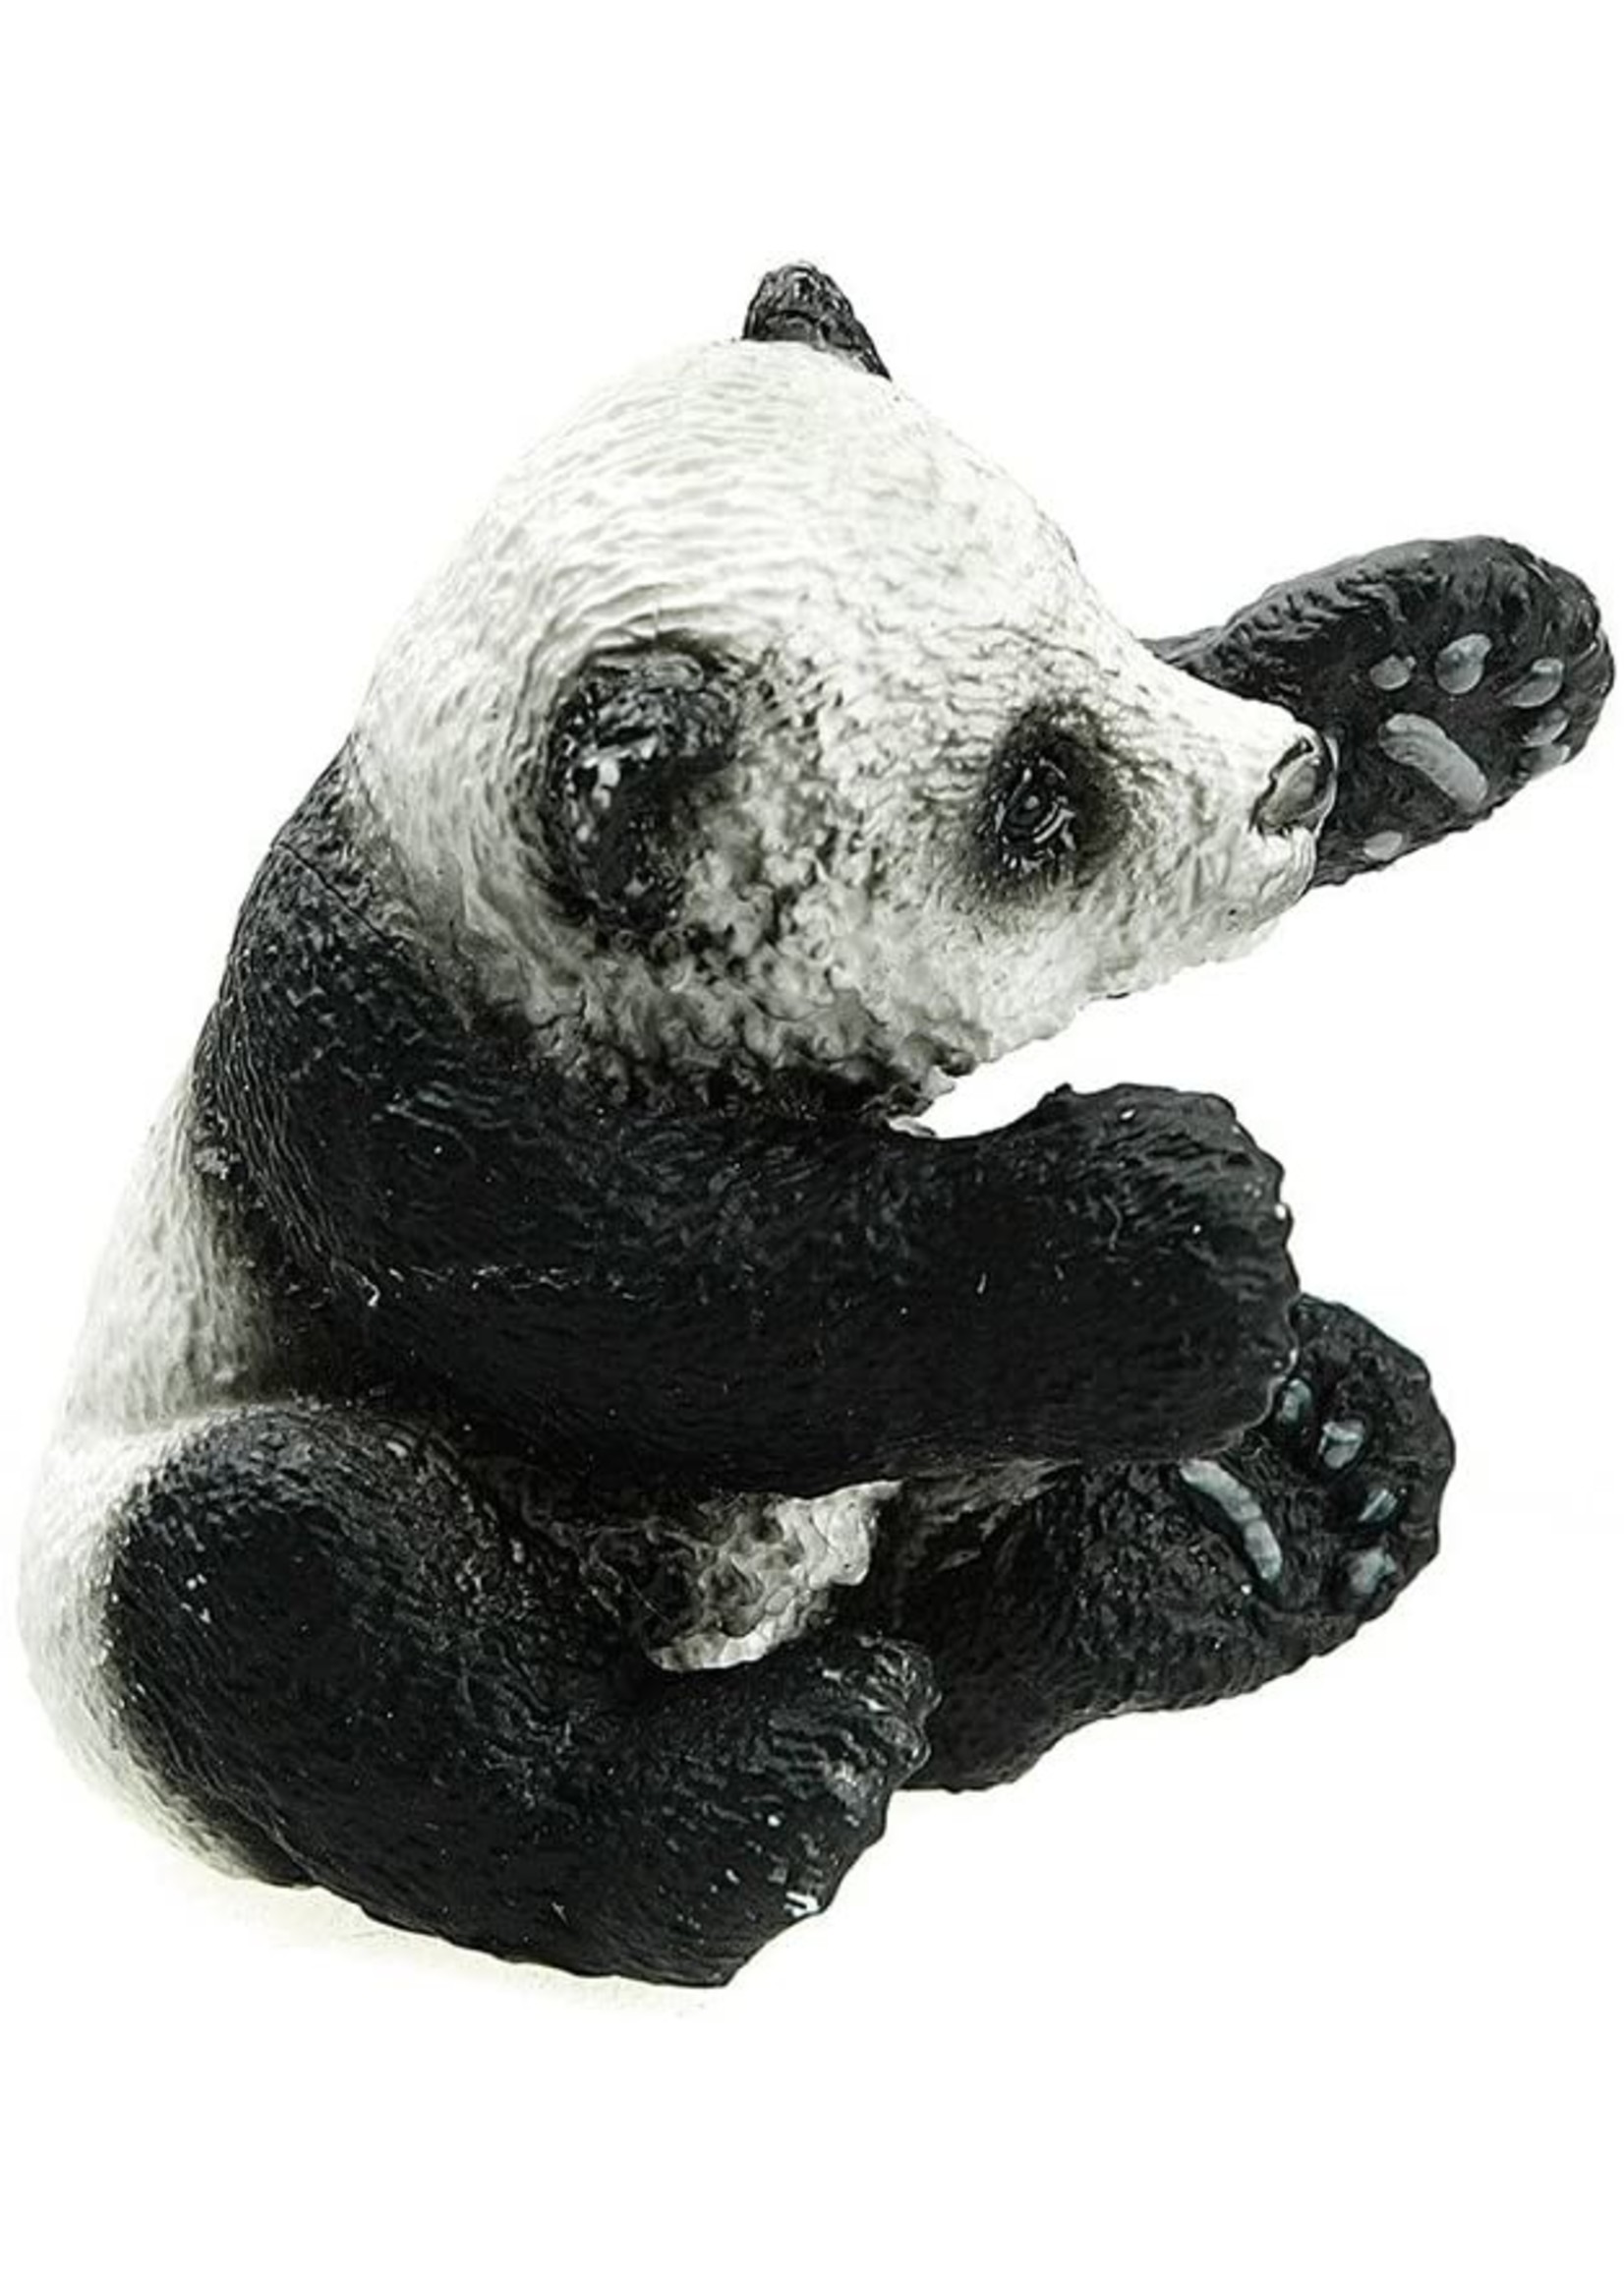 Schleich 14734 - Panda Cub, Playing